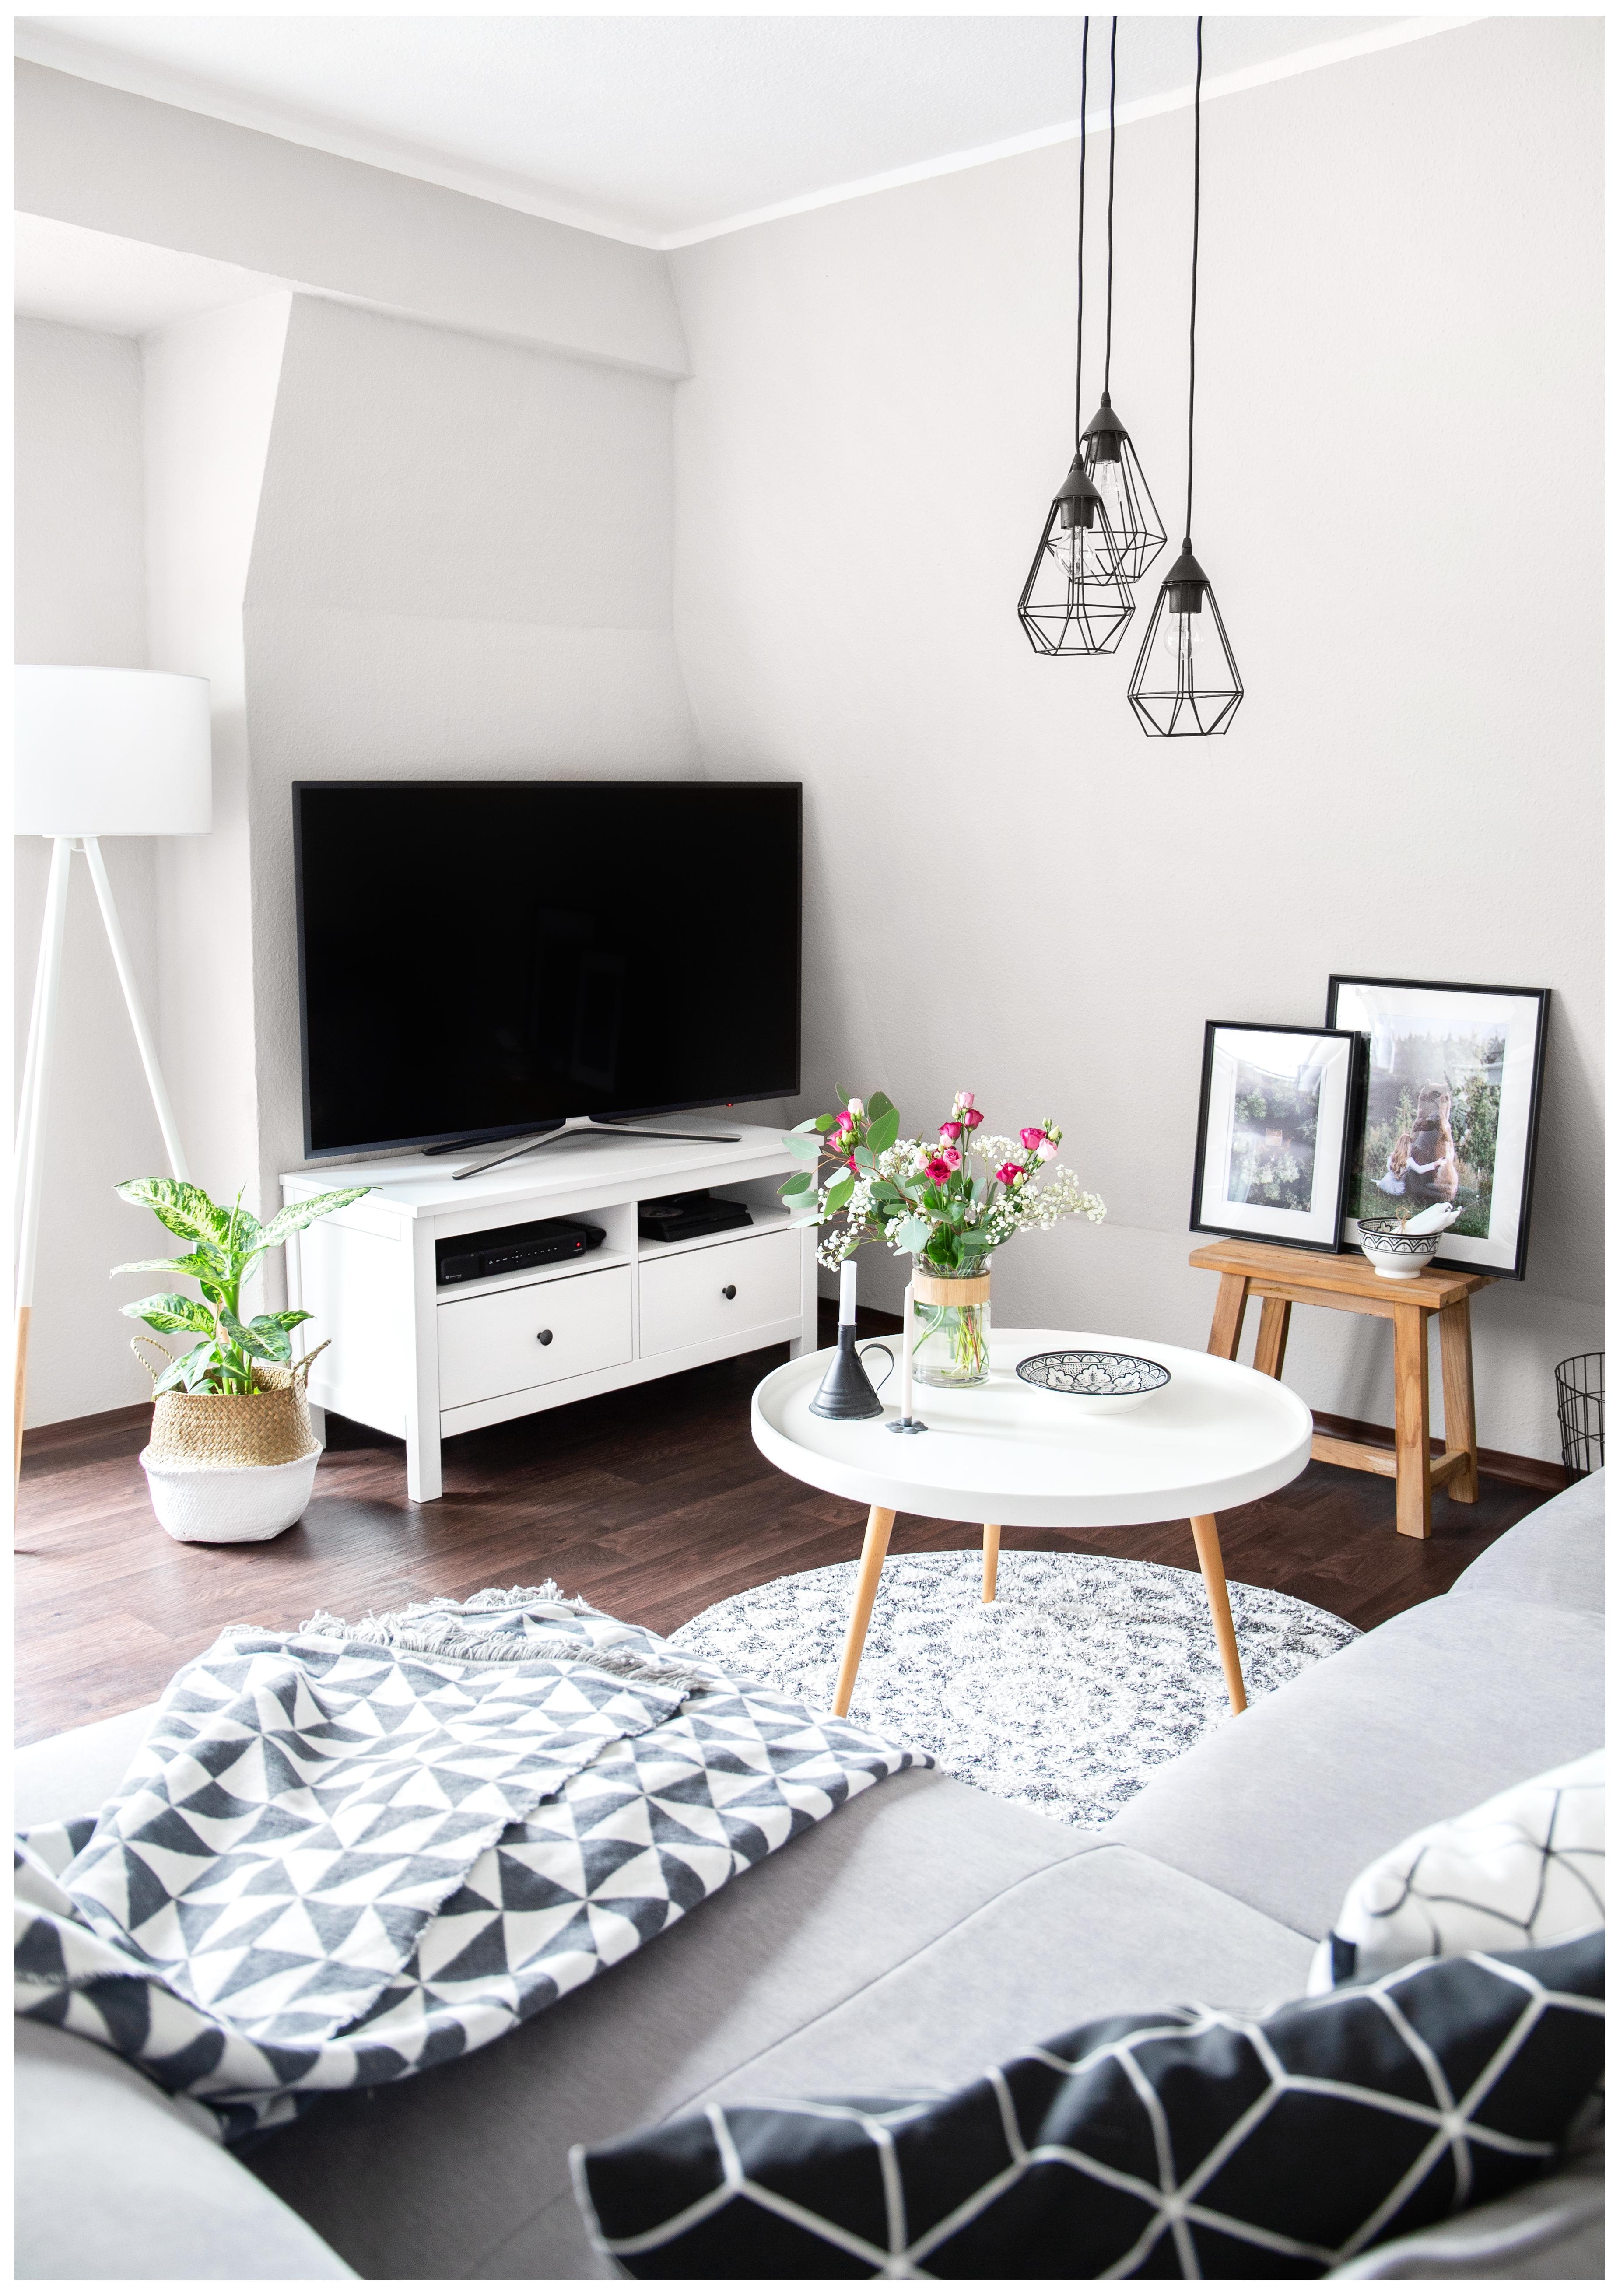 Mein kleines Wohnzimmer im Skandinavischen Stil. #skandinavischwohnen #wohnzimmer #einrichtung #deko #scandi 